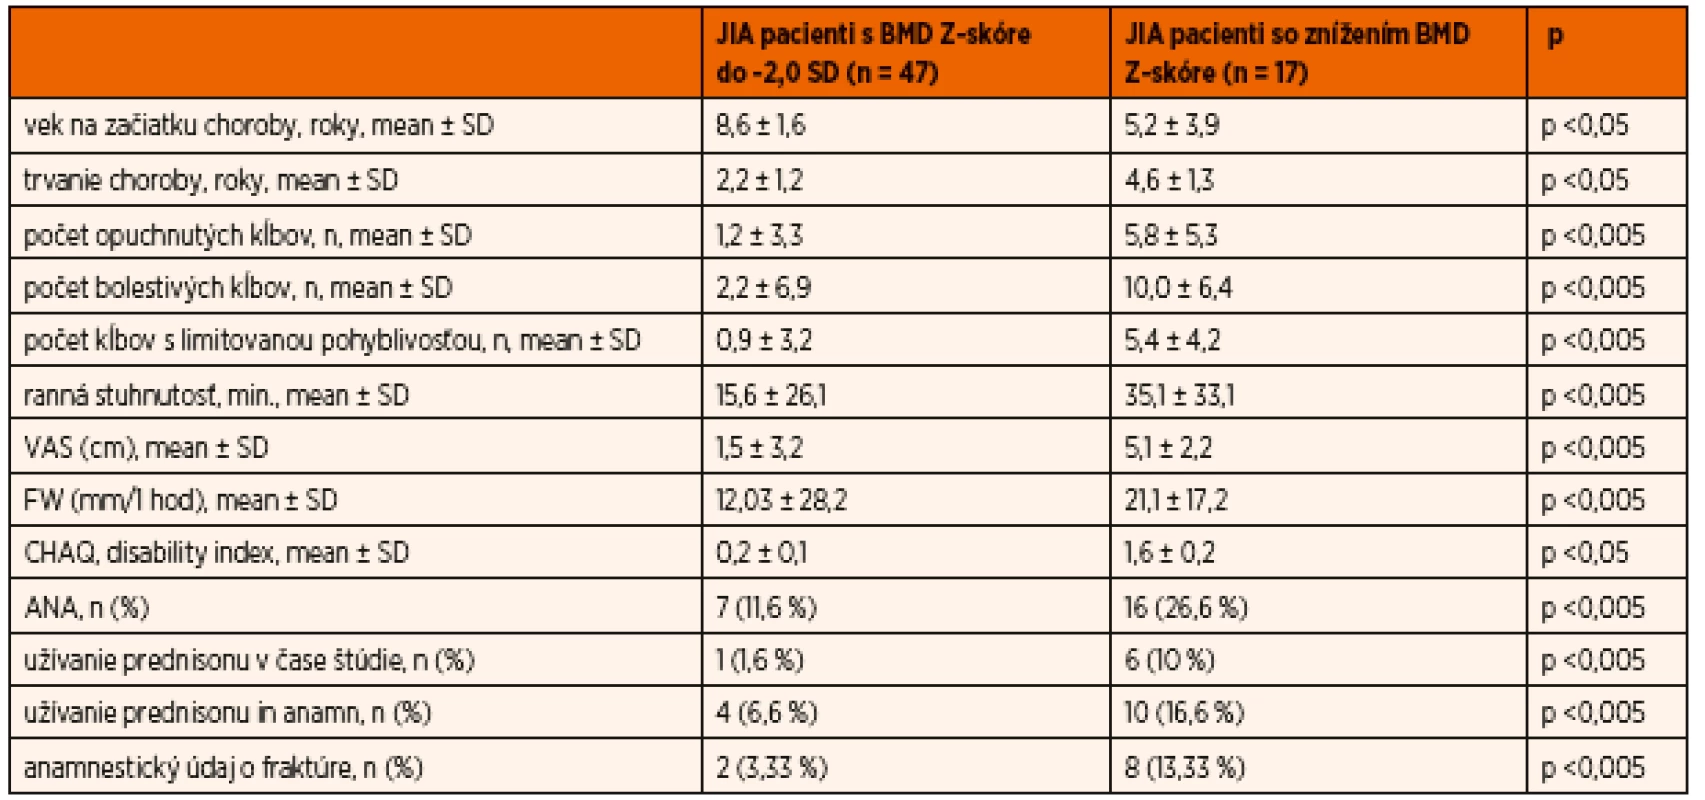 Vybrané charakteristiky JIA vo vzťahu k zníženiu BMD Z-skóre.